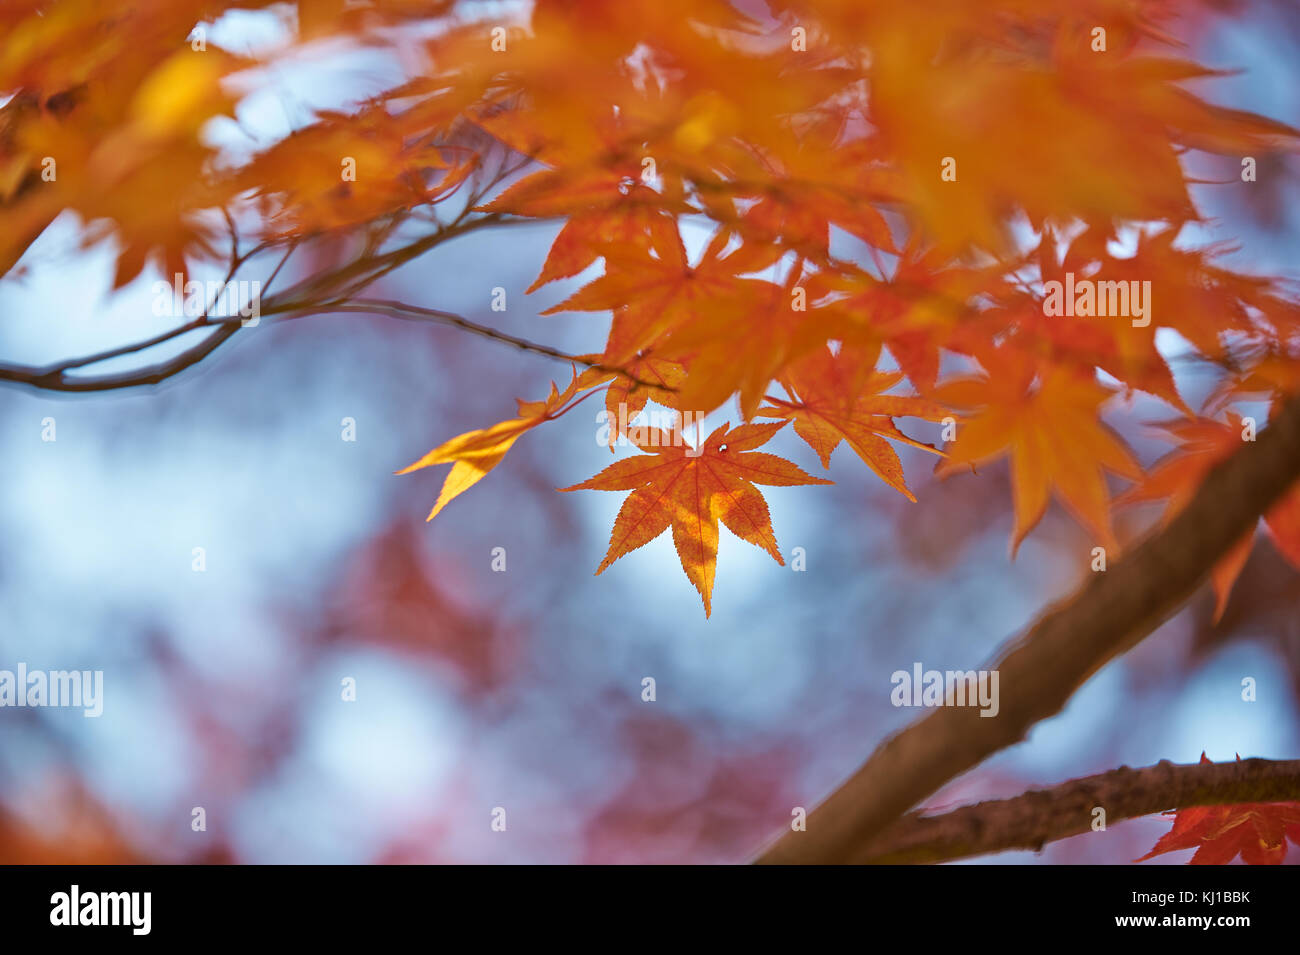 Magical autumn foliage at Soraksan National Park Stock Photo